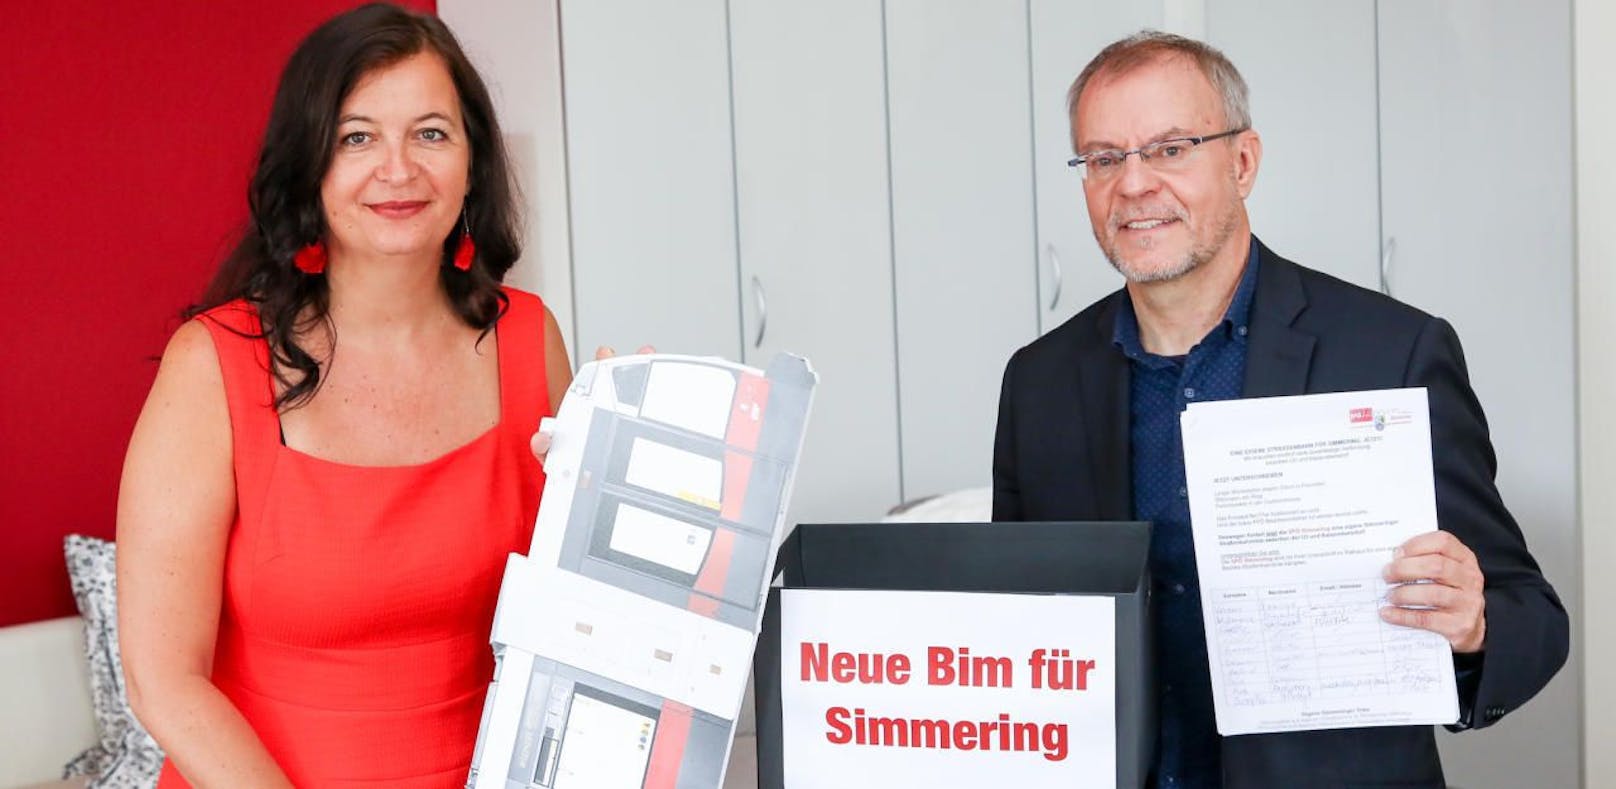 Harald Troch (SPÖ Simmering) übergab Öffi-Stadträtin Ulli Sima mehr als 5.000 Unterschriften für eine neue Bim in Simmering.